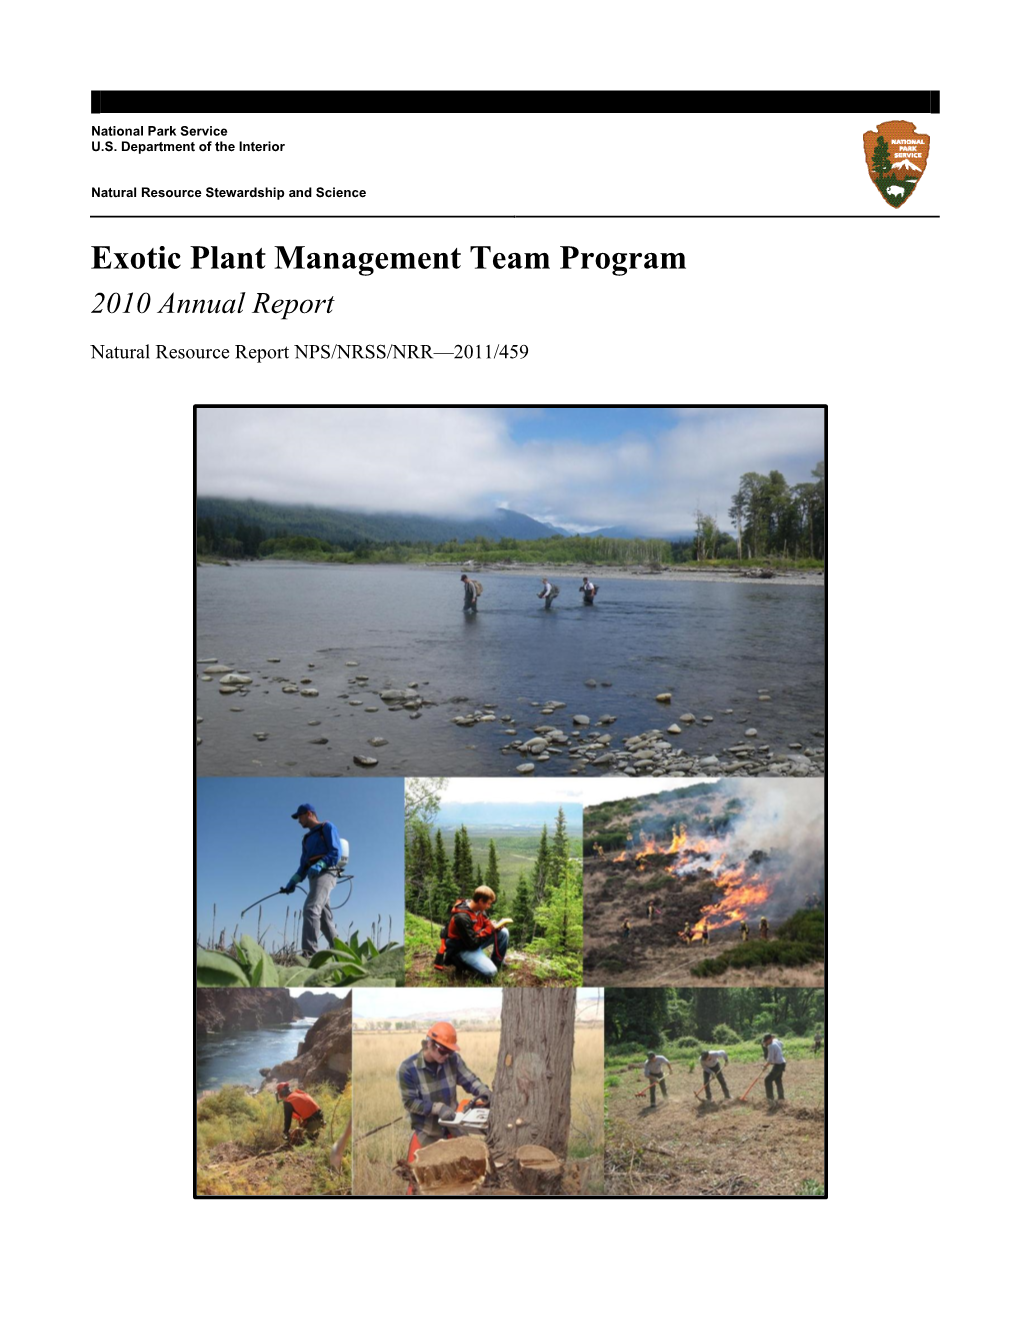 Exotic Plant Management Team Program 2010 Annual Report